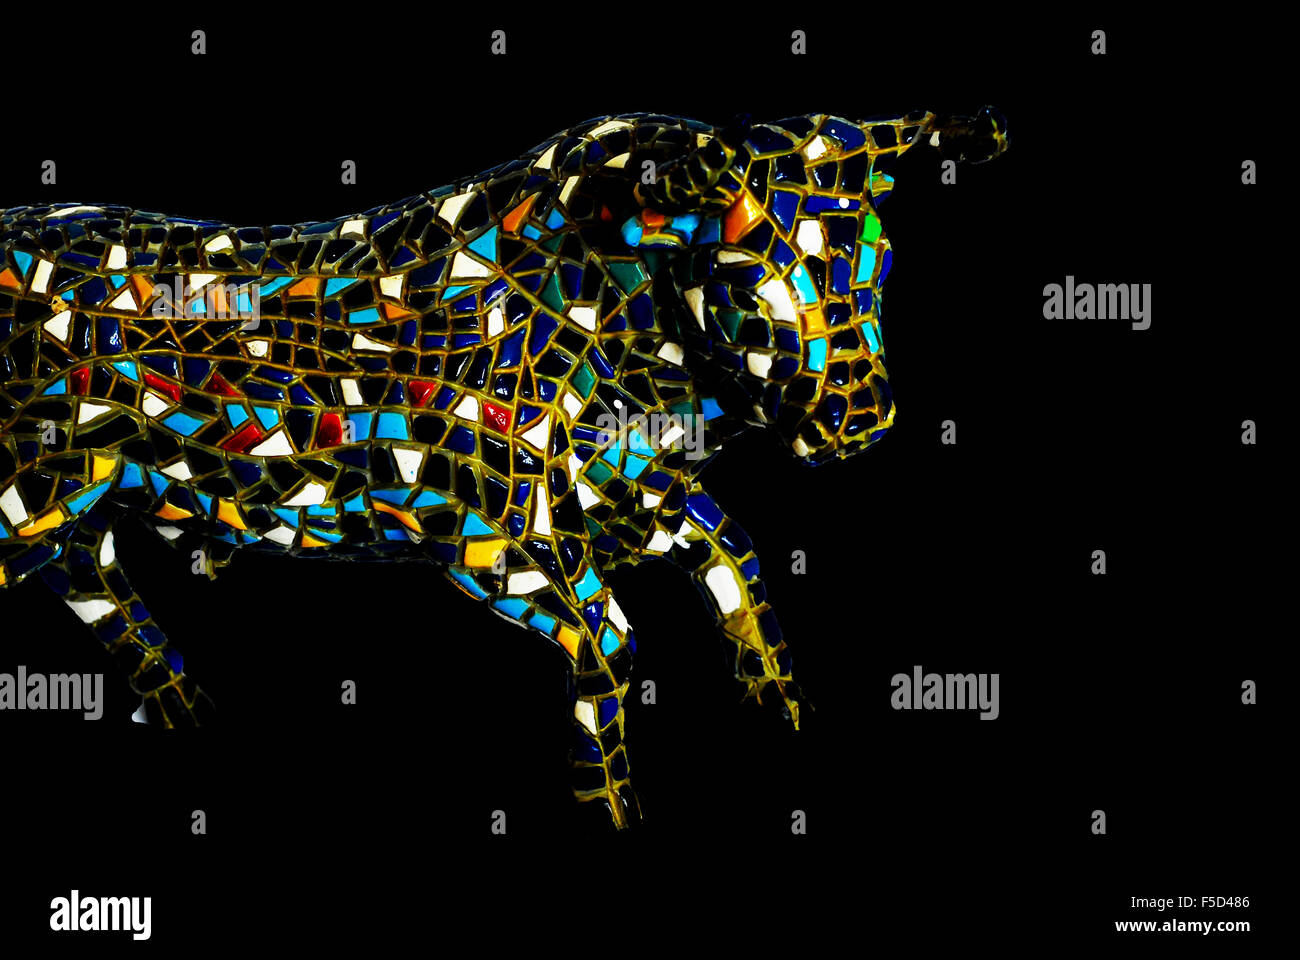 mozaic,bull,china,blue,red,fighting,spanish Stock Photo